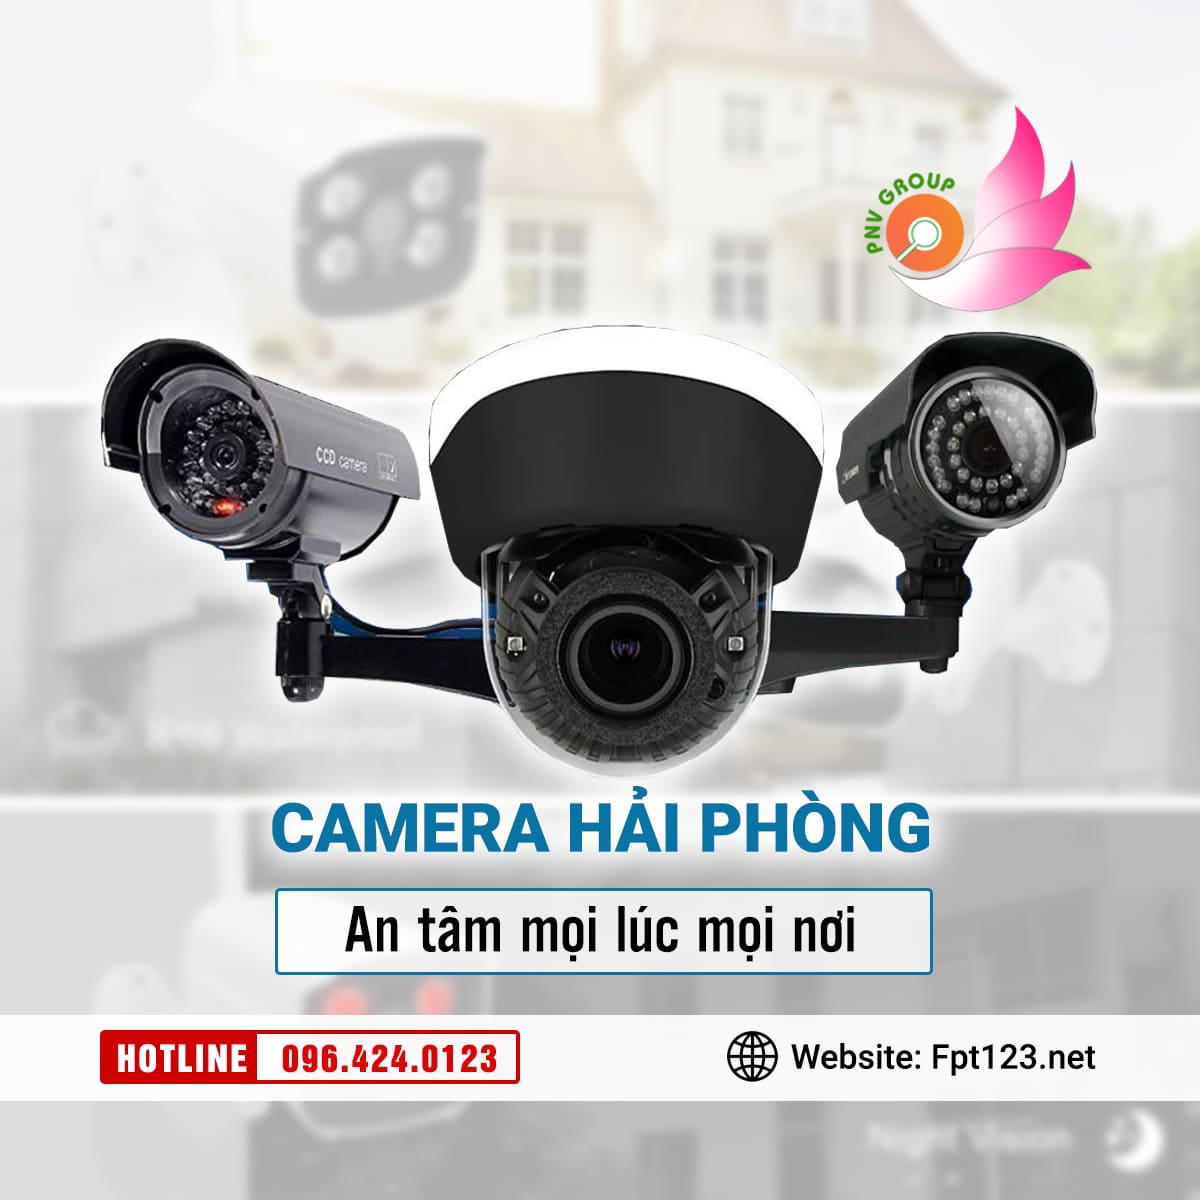 Lắp đặt camera chống trộm tại quận Dương Kinh, Hải Phòng